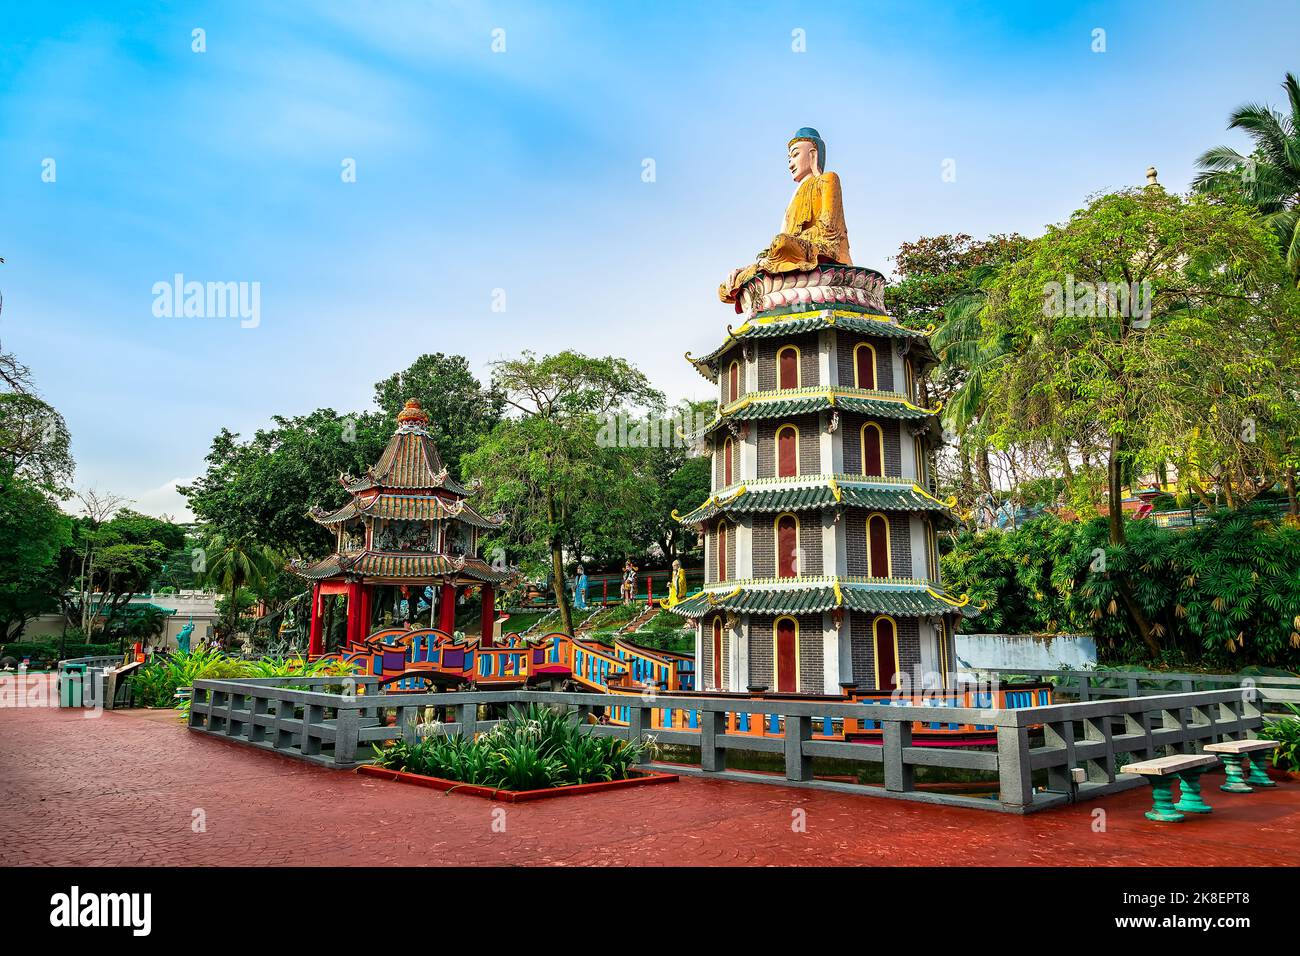 Pagoda Cinese e Padiglione sul Lago al Parco a tema Villa Haw Par. Questo parco ha statue e scene di diorami dalla mitologia cinese, folklore, legen Foto Stock